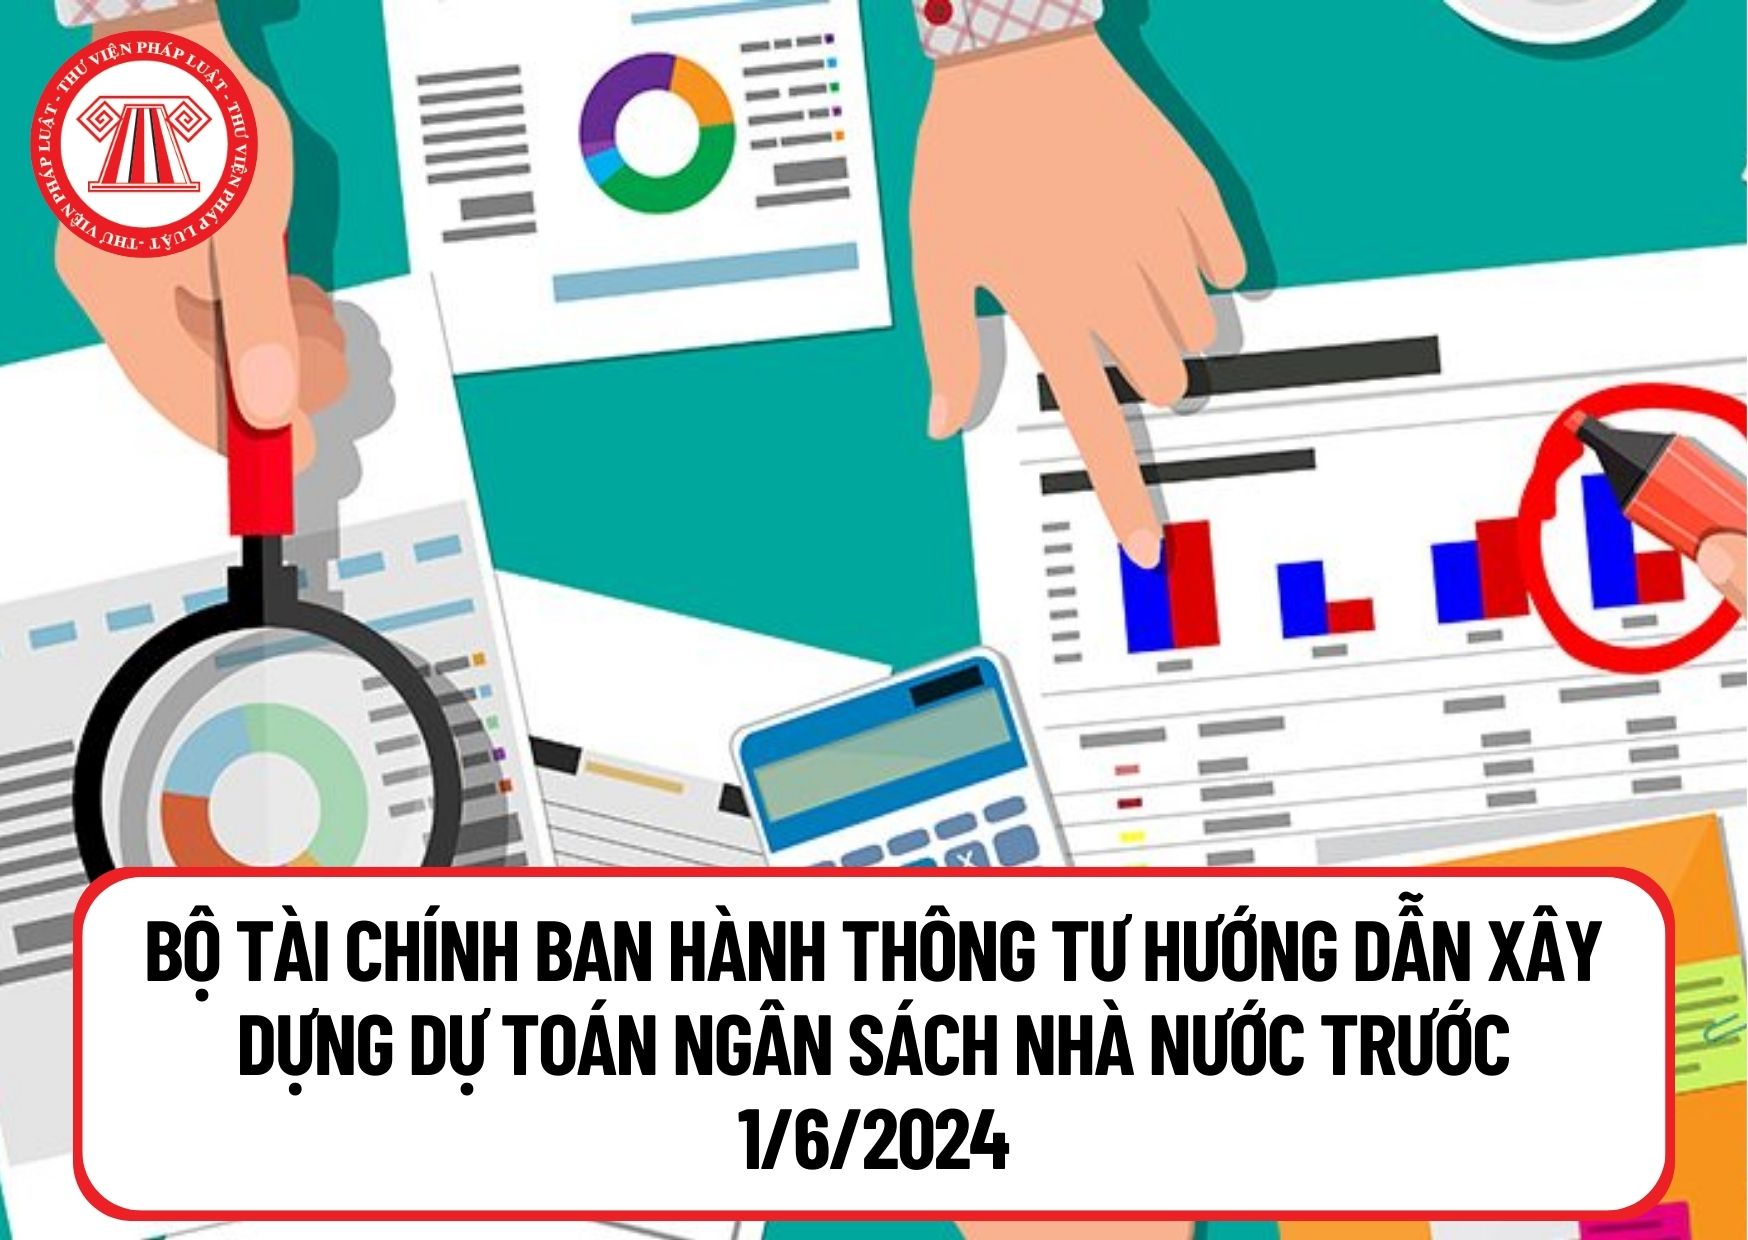 Theo Luật ngân sách nhà nước hiện hành, trước 1/6/2024 Bộ Tài Chính ban hành Thông tư hướng dẫn xây dựng dự toán ngân sách nhà nước 2025 đúng không?